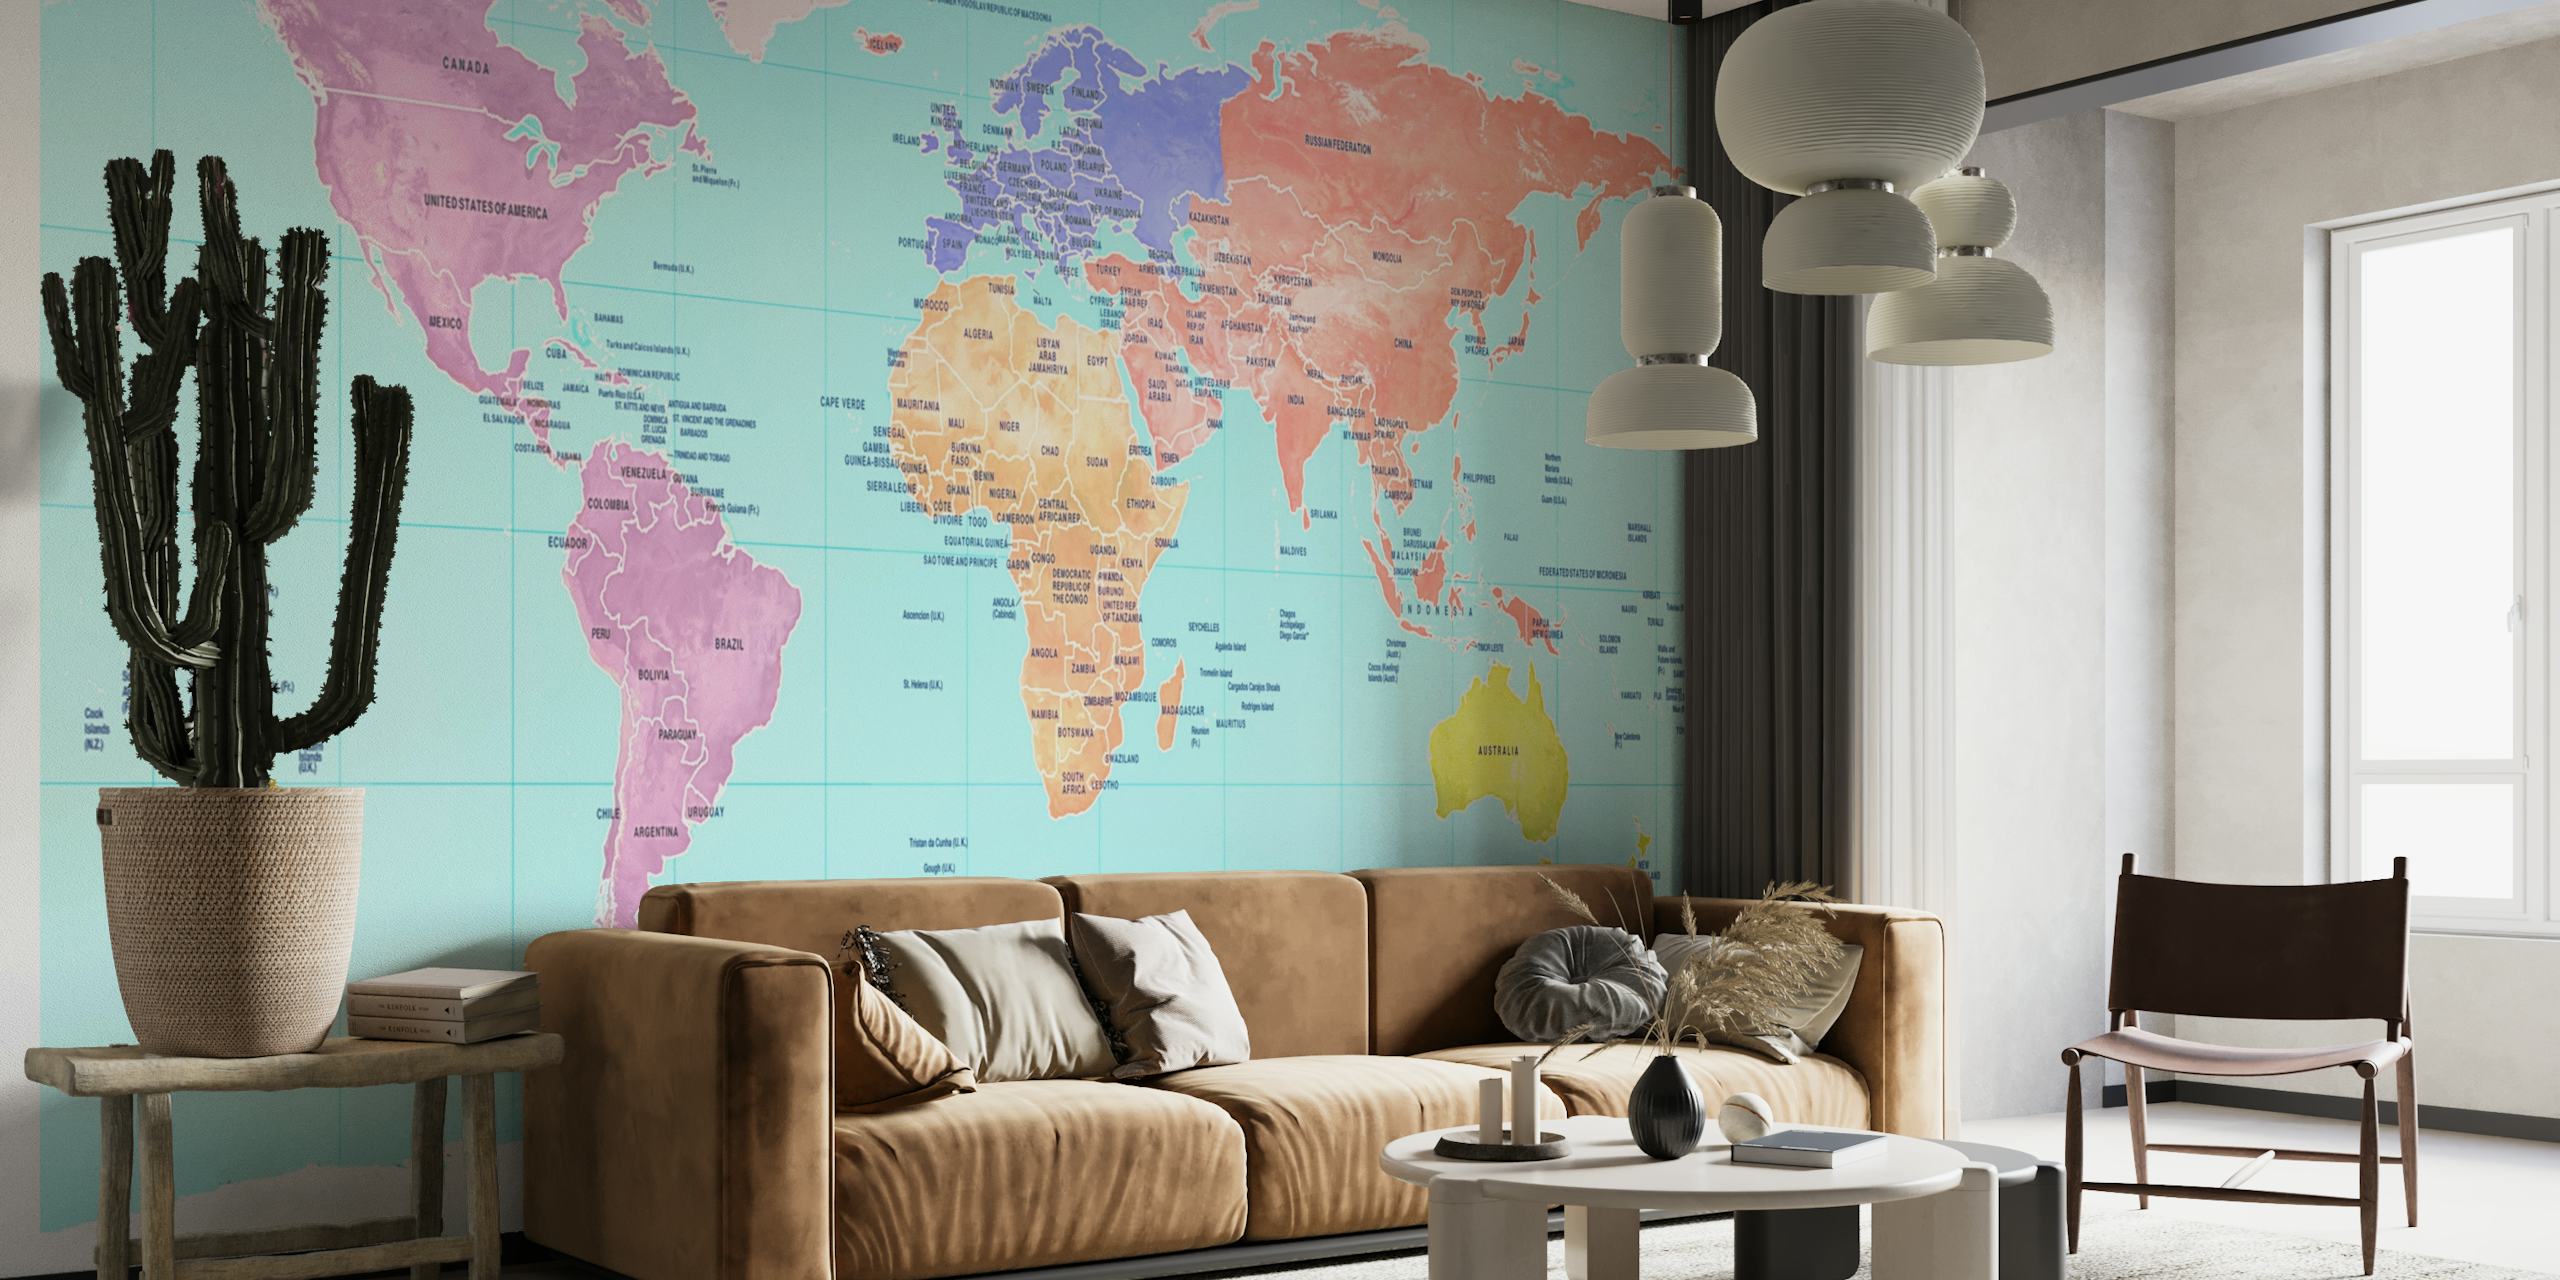 Papier peint mural carte du monde coloré montrant les continents dans différentes teintes